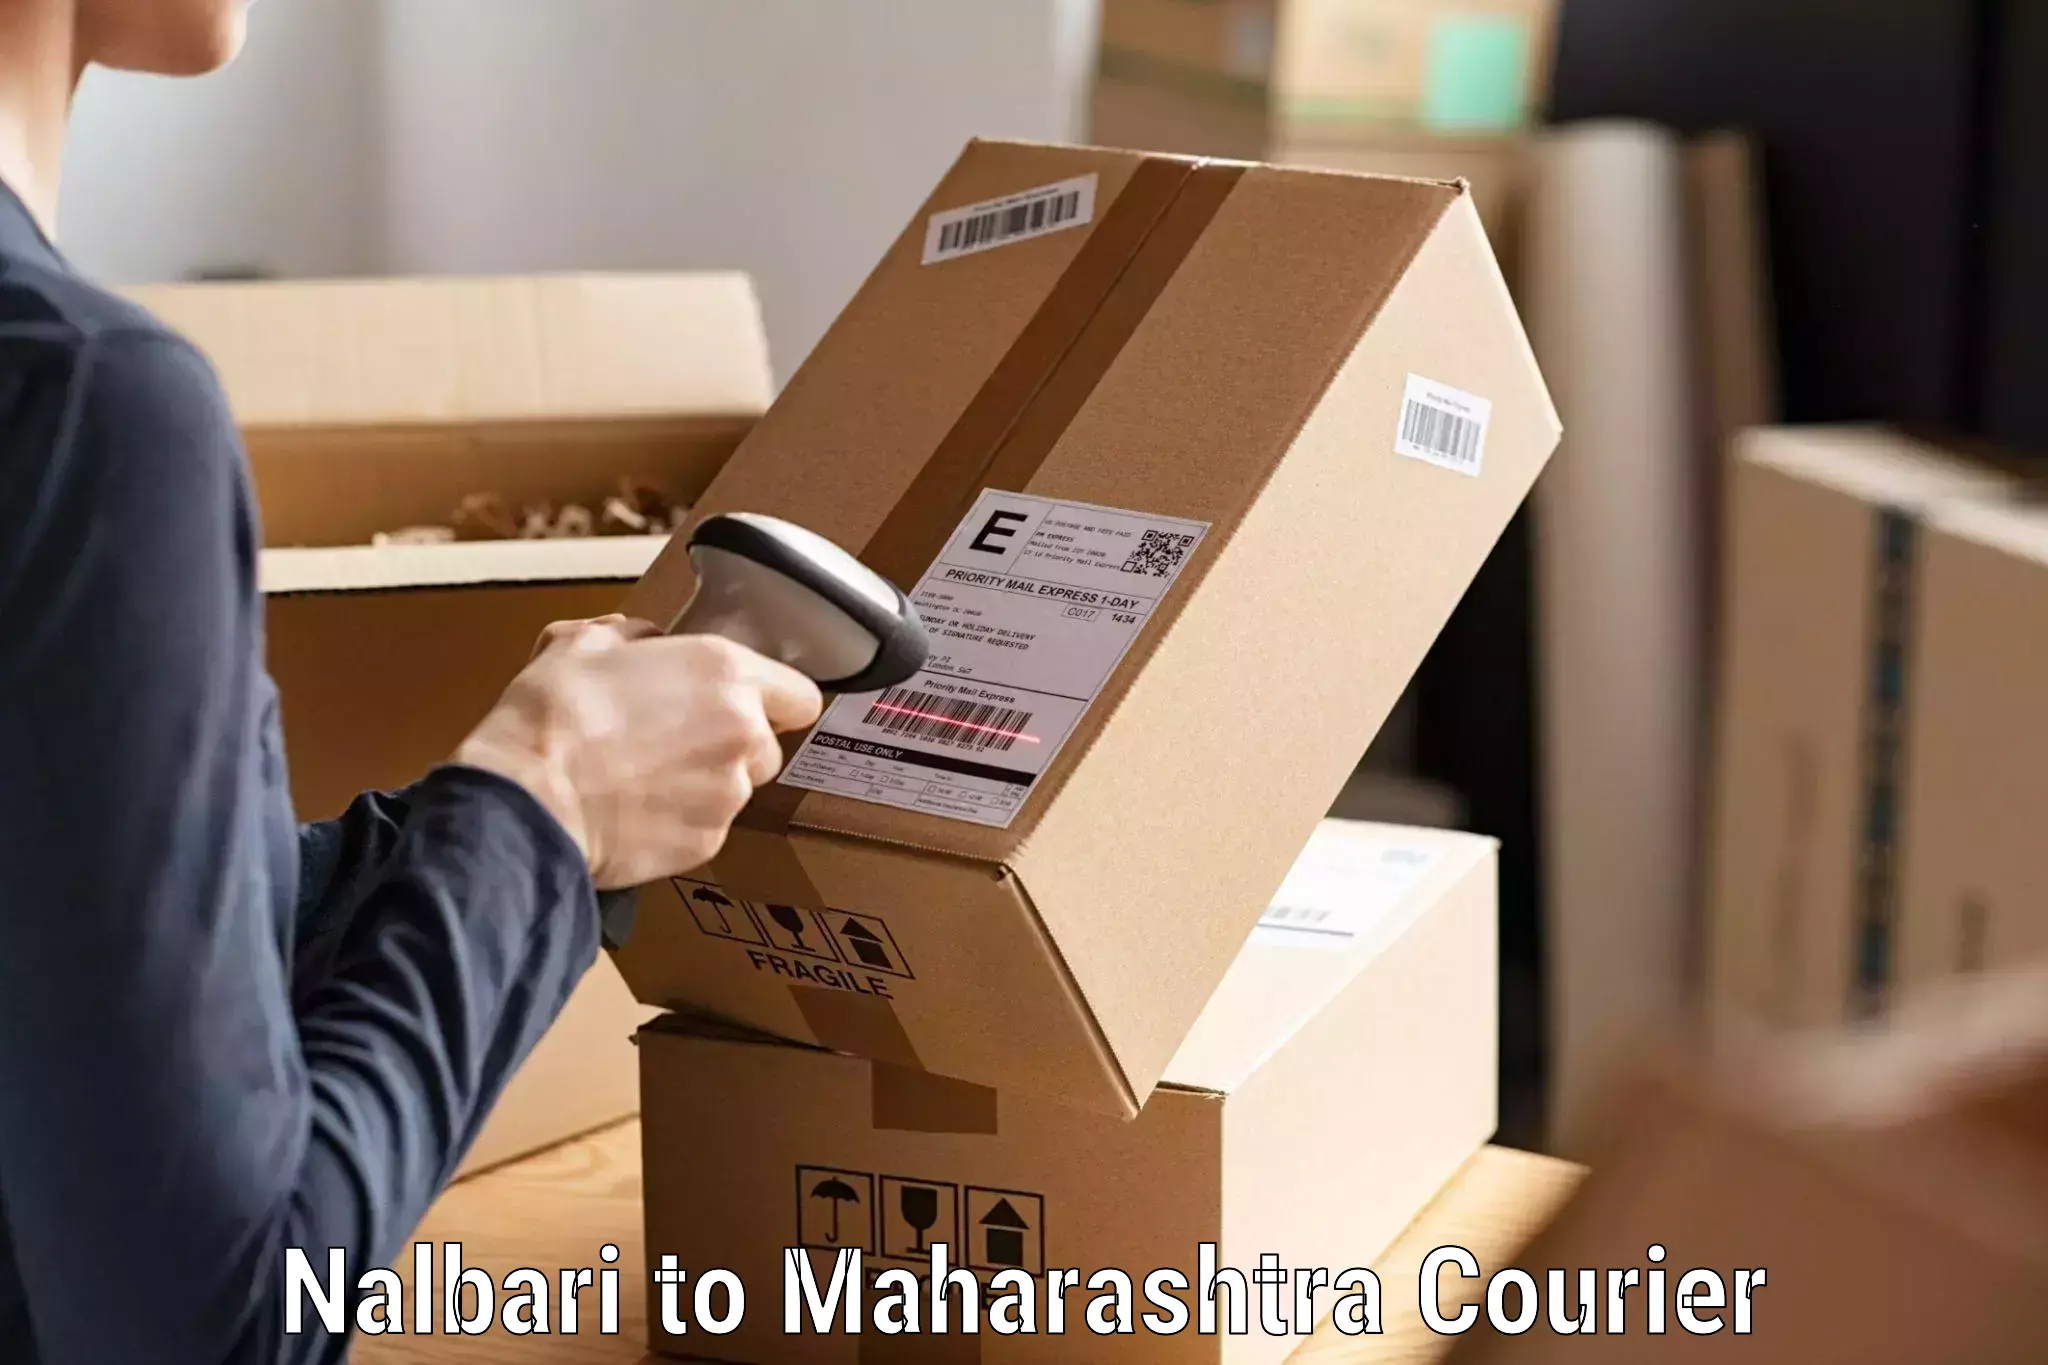 Tracking updates Nalbari to Aurangabad